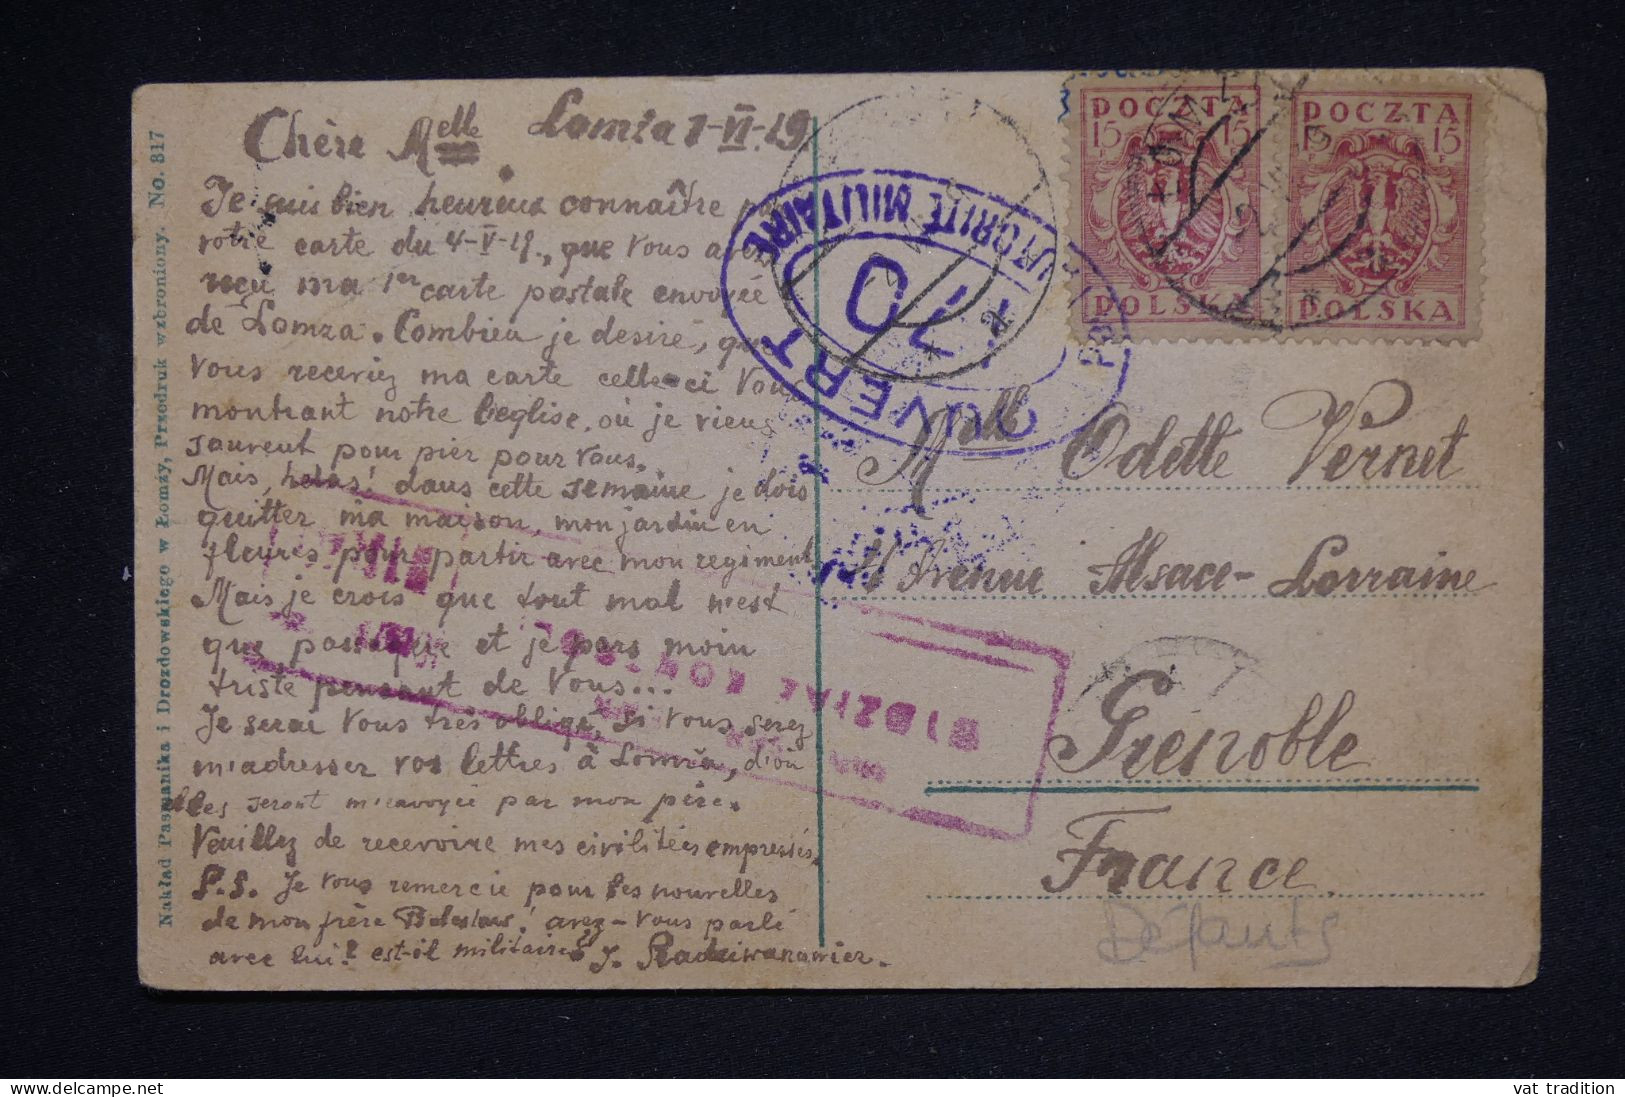 POLOGNE - Carte Postale En 1919 Pour La France Avec Cachet De Contrôle Postal - L 150227 - Briefe U. Dokumente